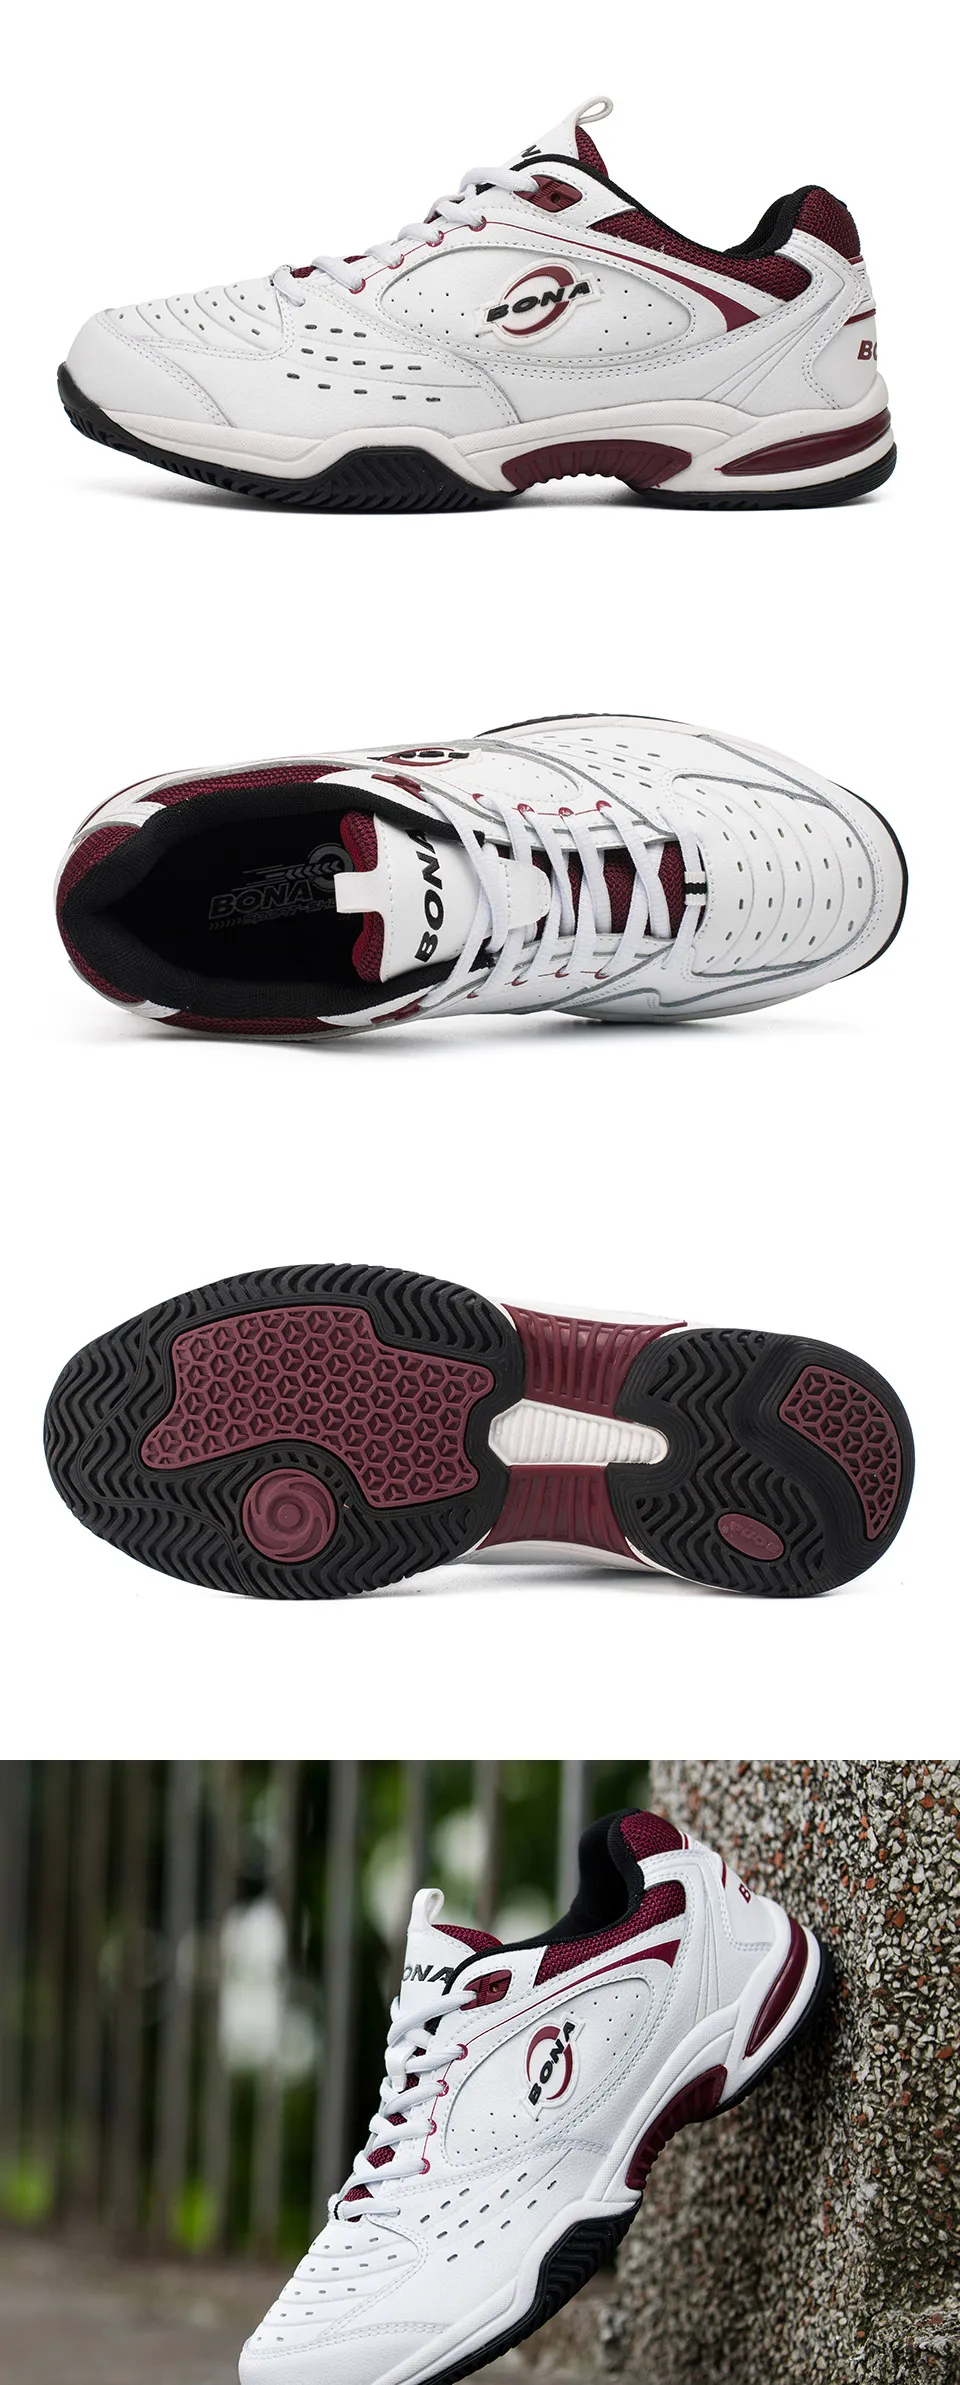 BONA/Новое поступление; Популярные стильные мужские теннисные туфли; уличные беговые кроссовки на шнуровке; Мужская Спортивная обувь; Удобная